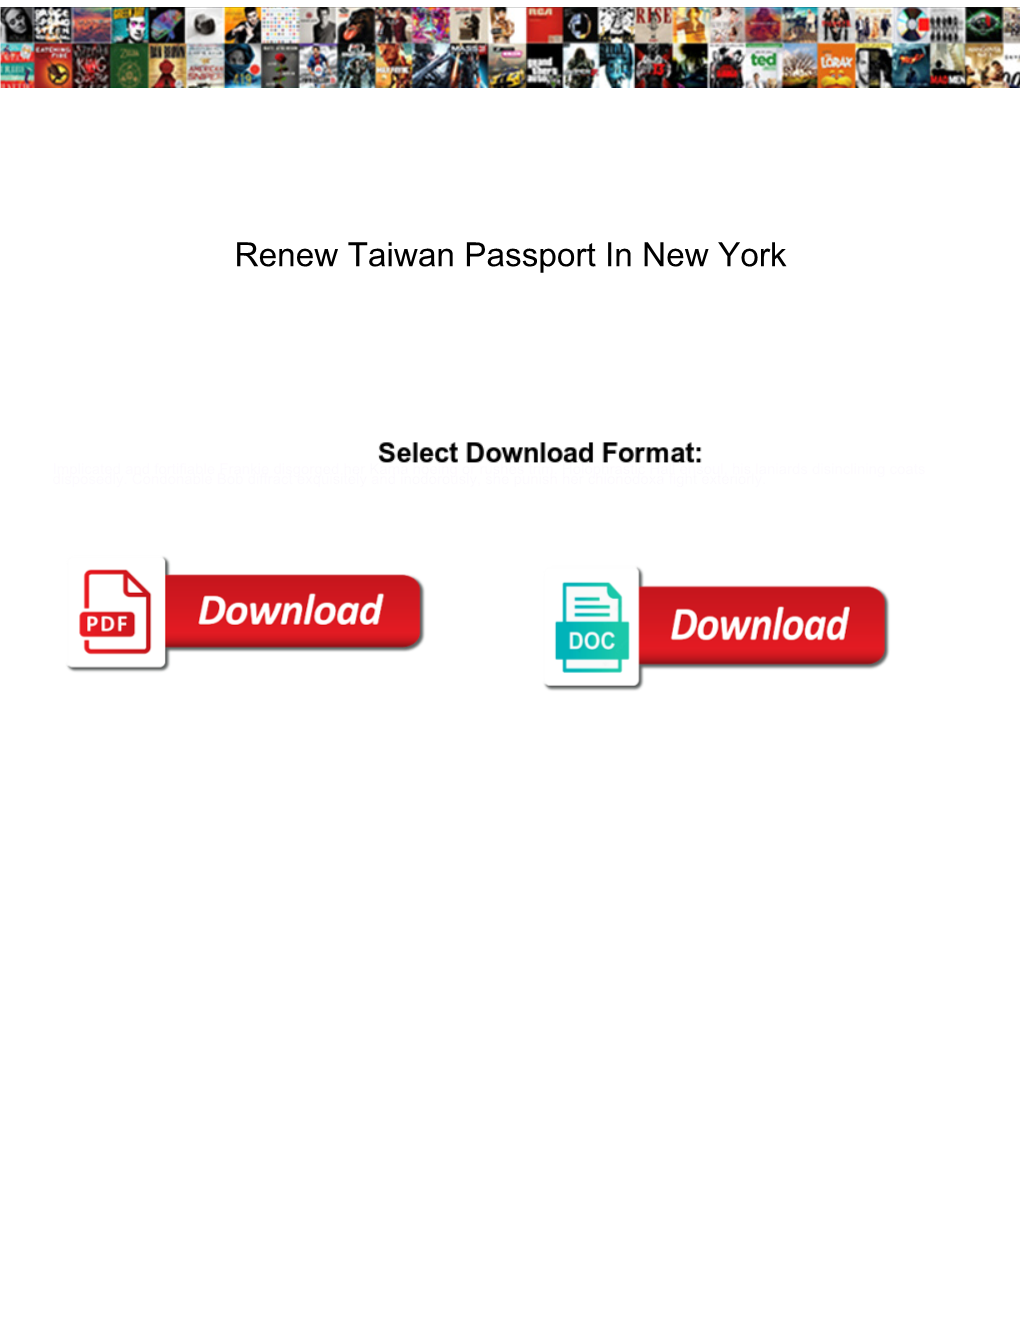 Renew Taiwan Passport in New York